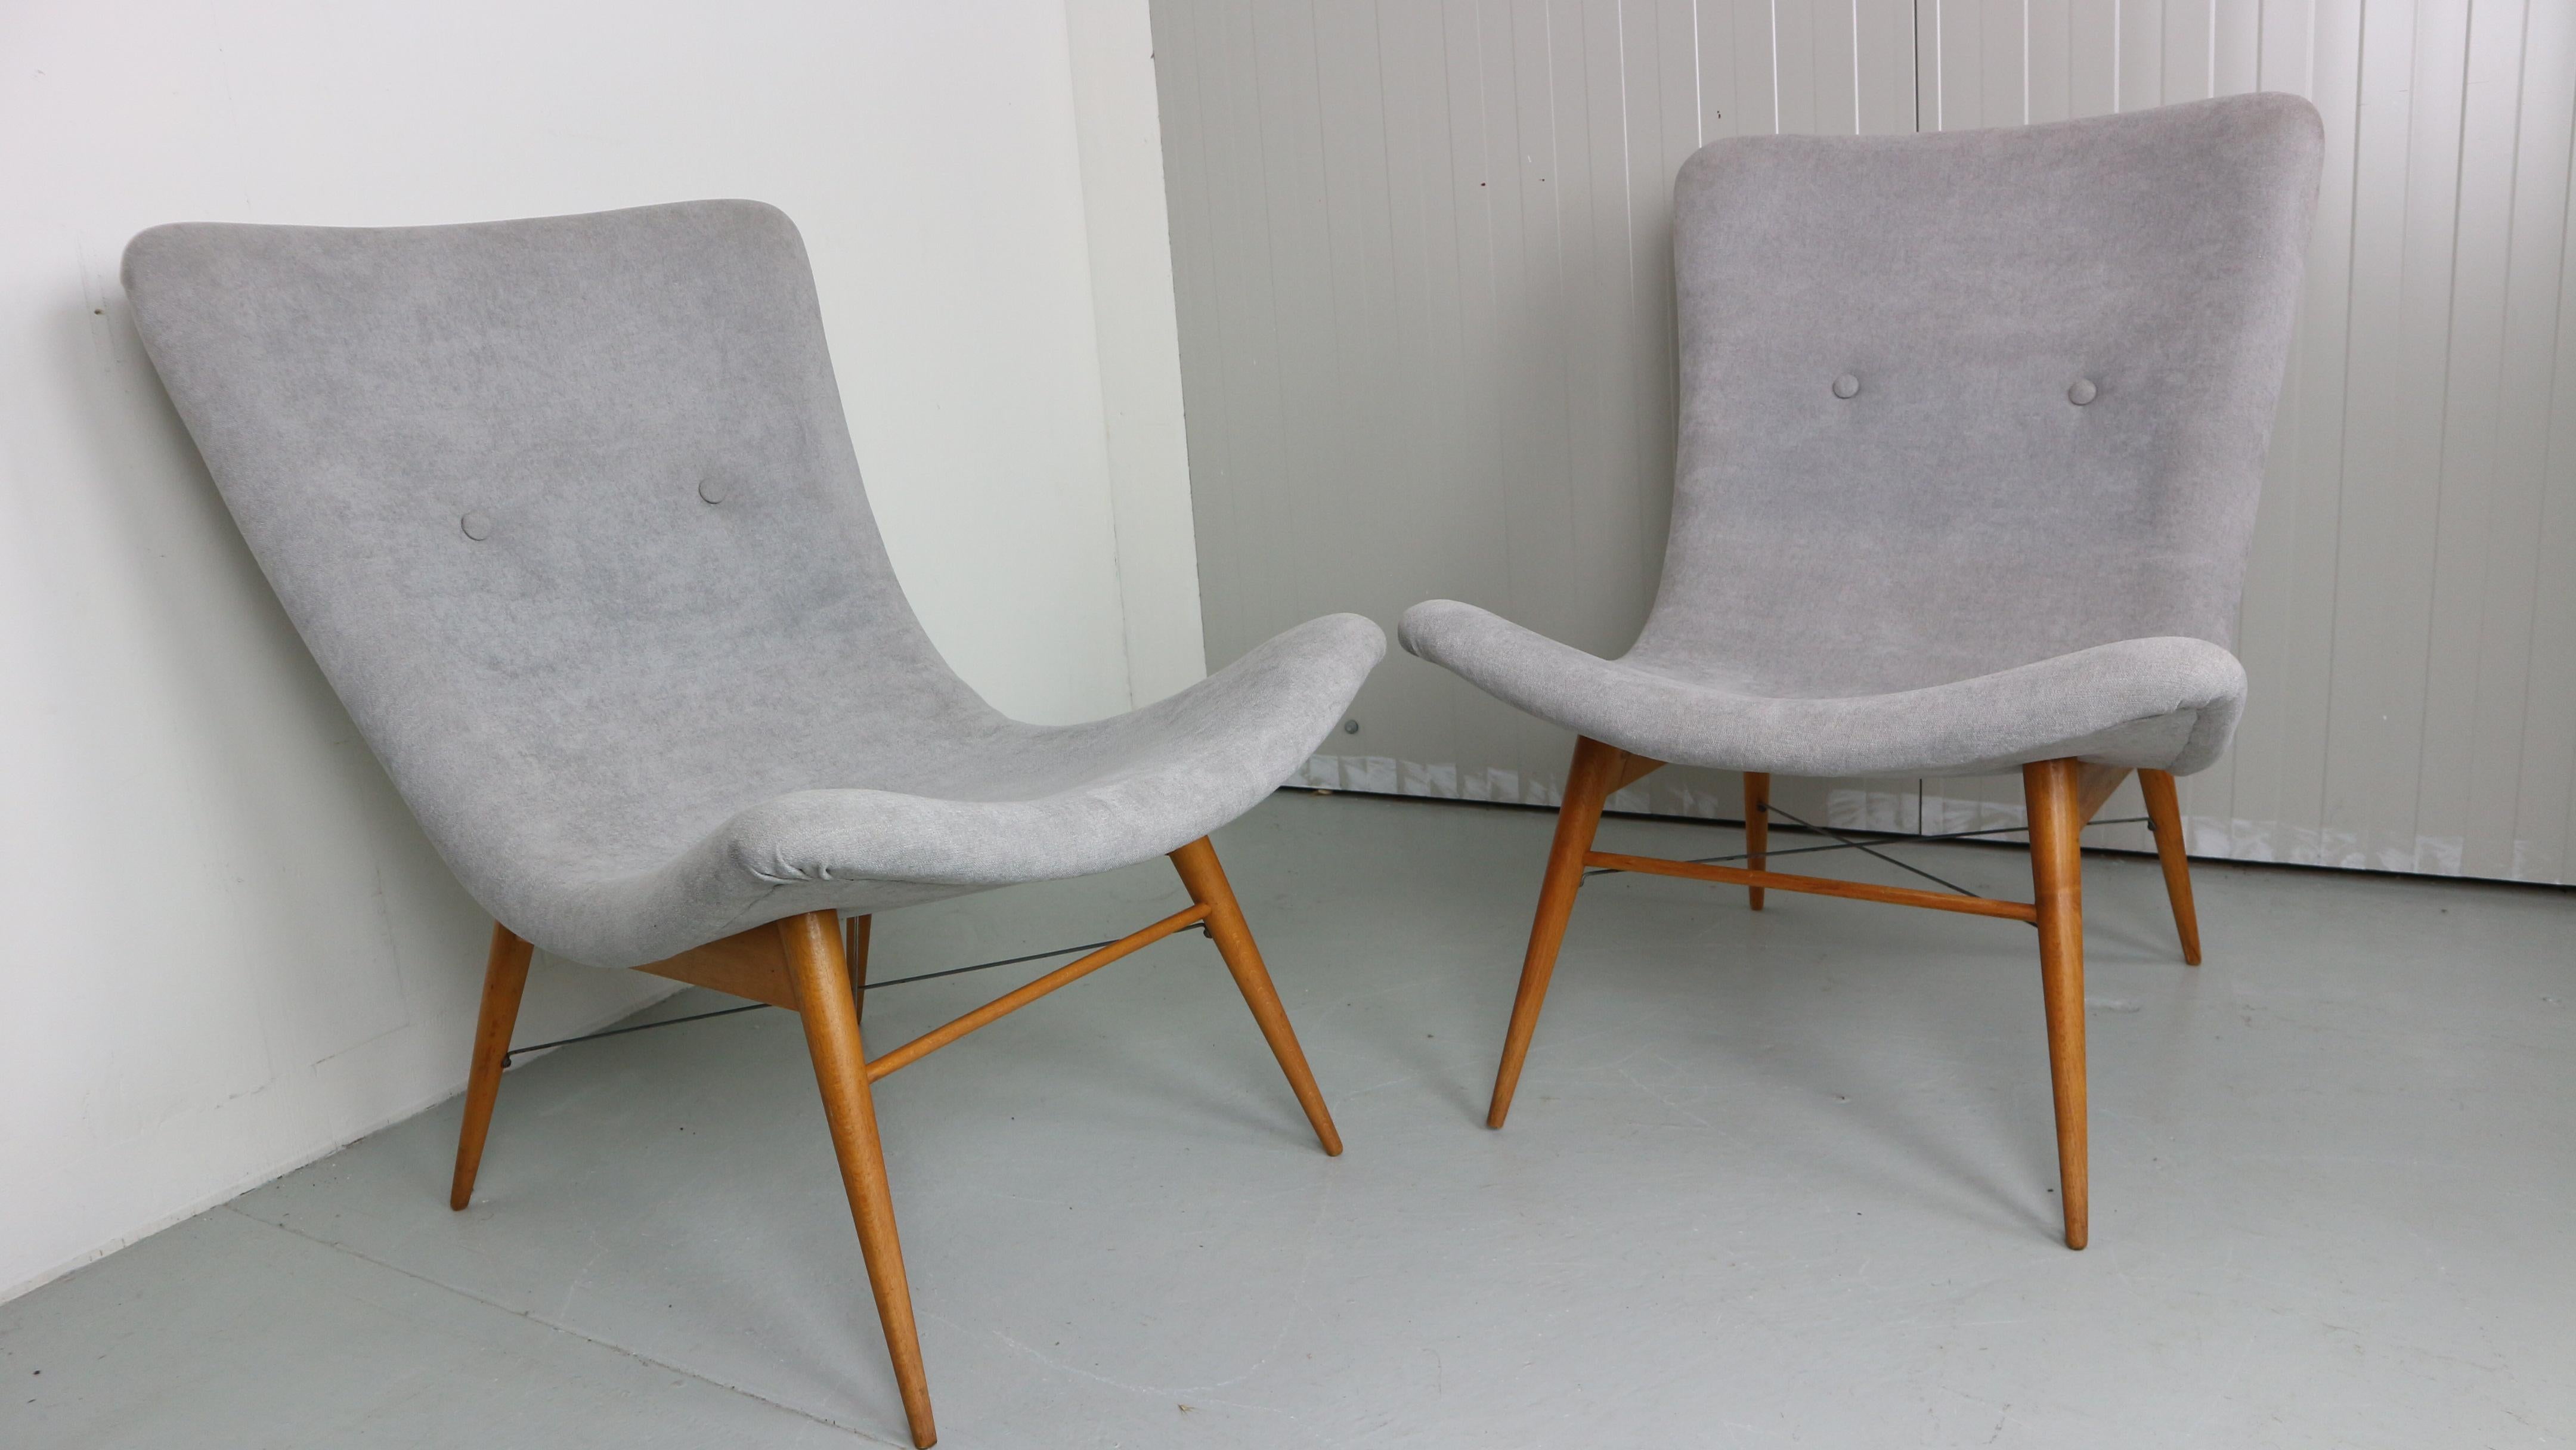 Ensemble de deux chaises longues de Miroslav Navratil, fabriquées dans l'ancienne Tchécoslovaquie par Cesky Nabytek, années 1959.
Socle en bois d'origine.
Les deux chaises ont été récemment retapissées avec du tissu gris clair. 